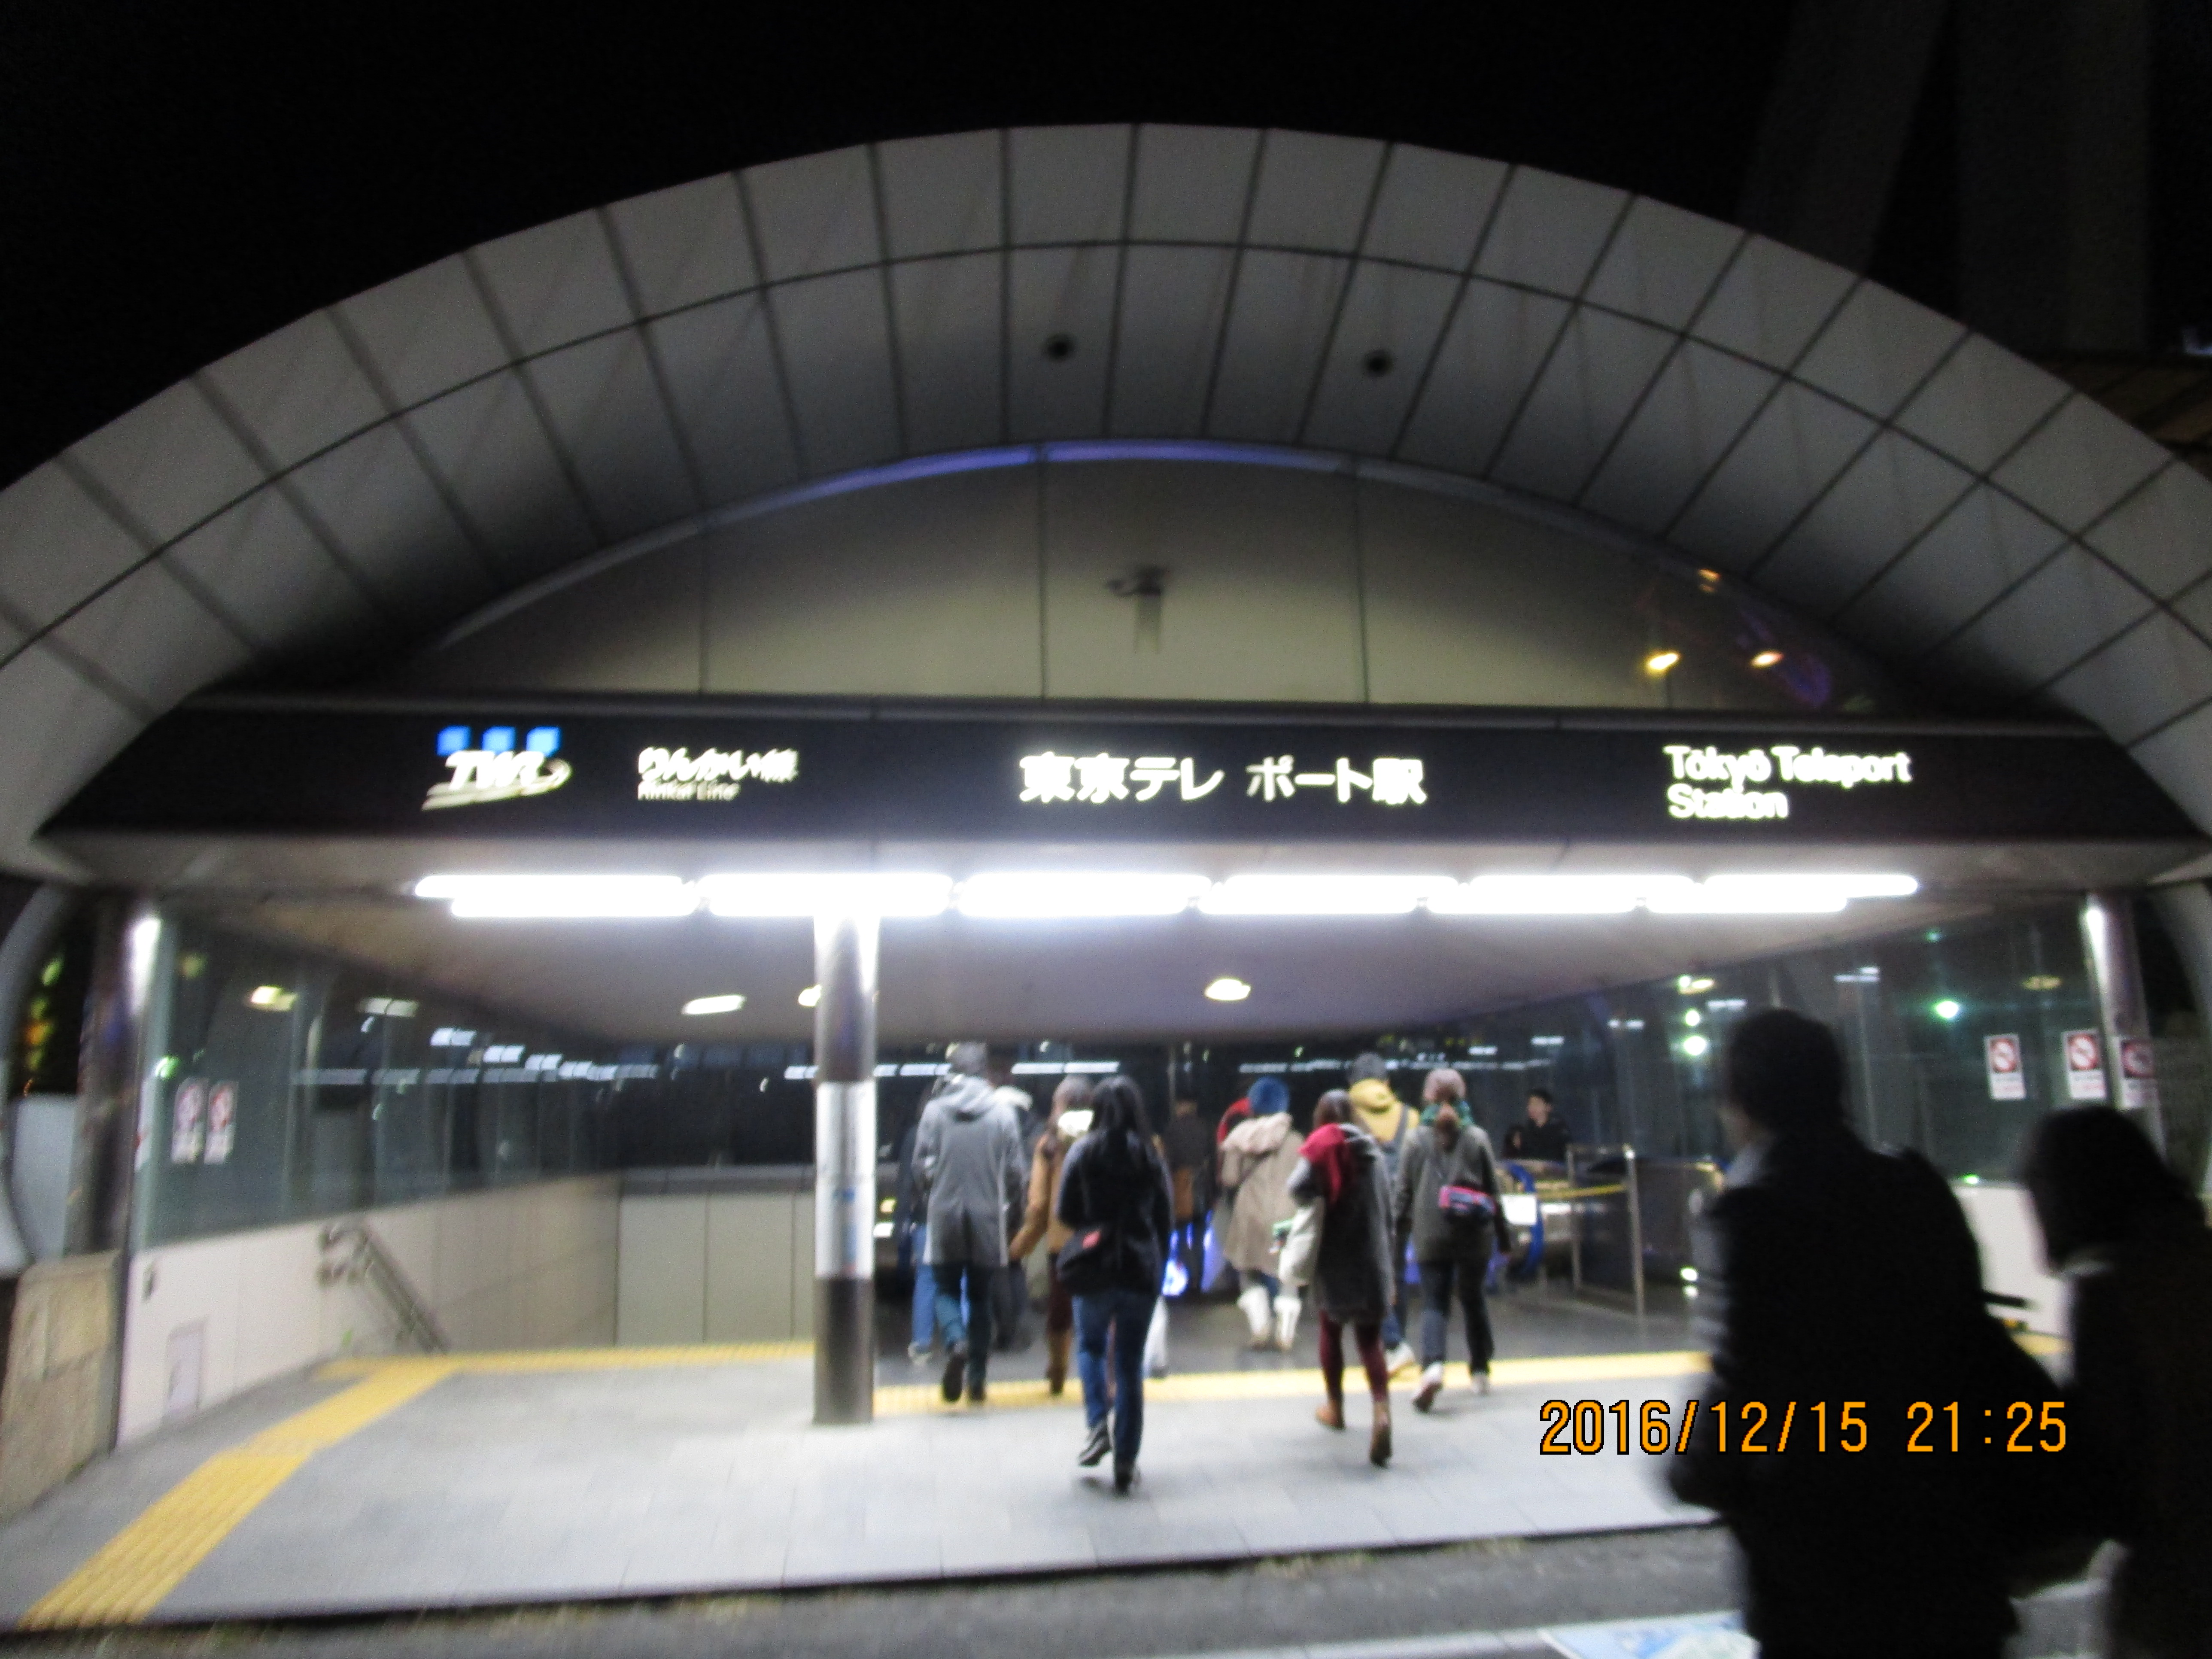 東京テレポート駅からzepp 東京への行き方とロッカーなどについて よねやんうぇぶ